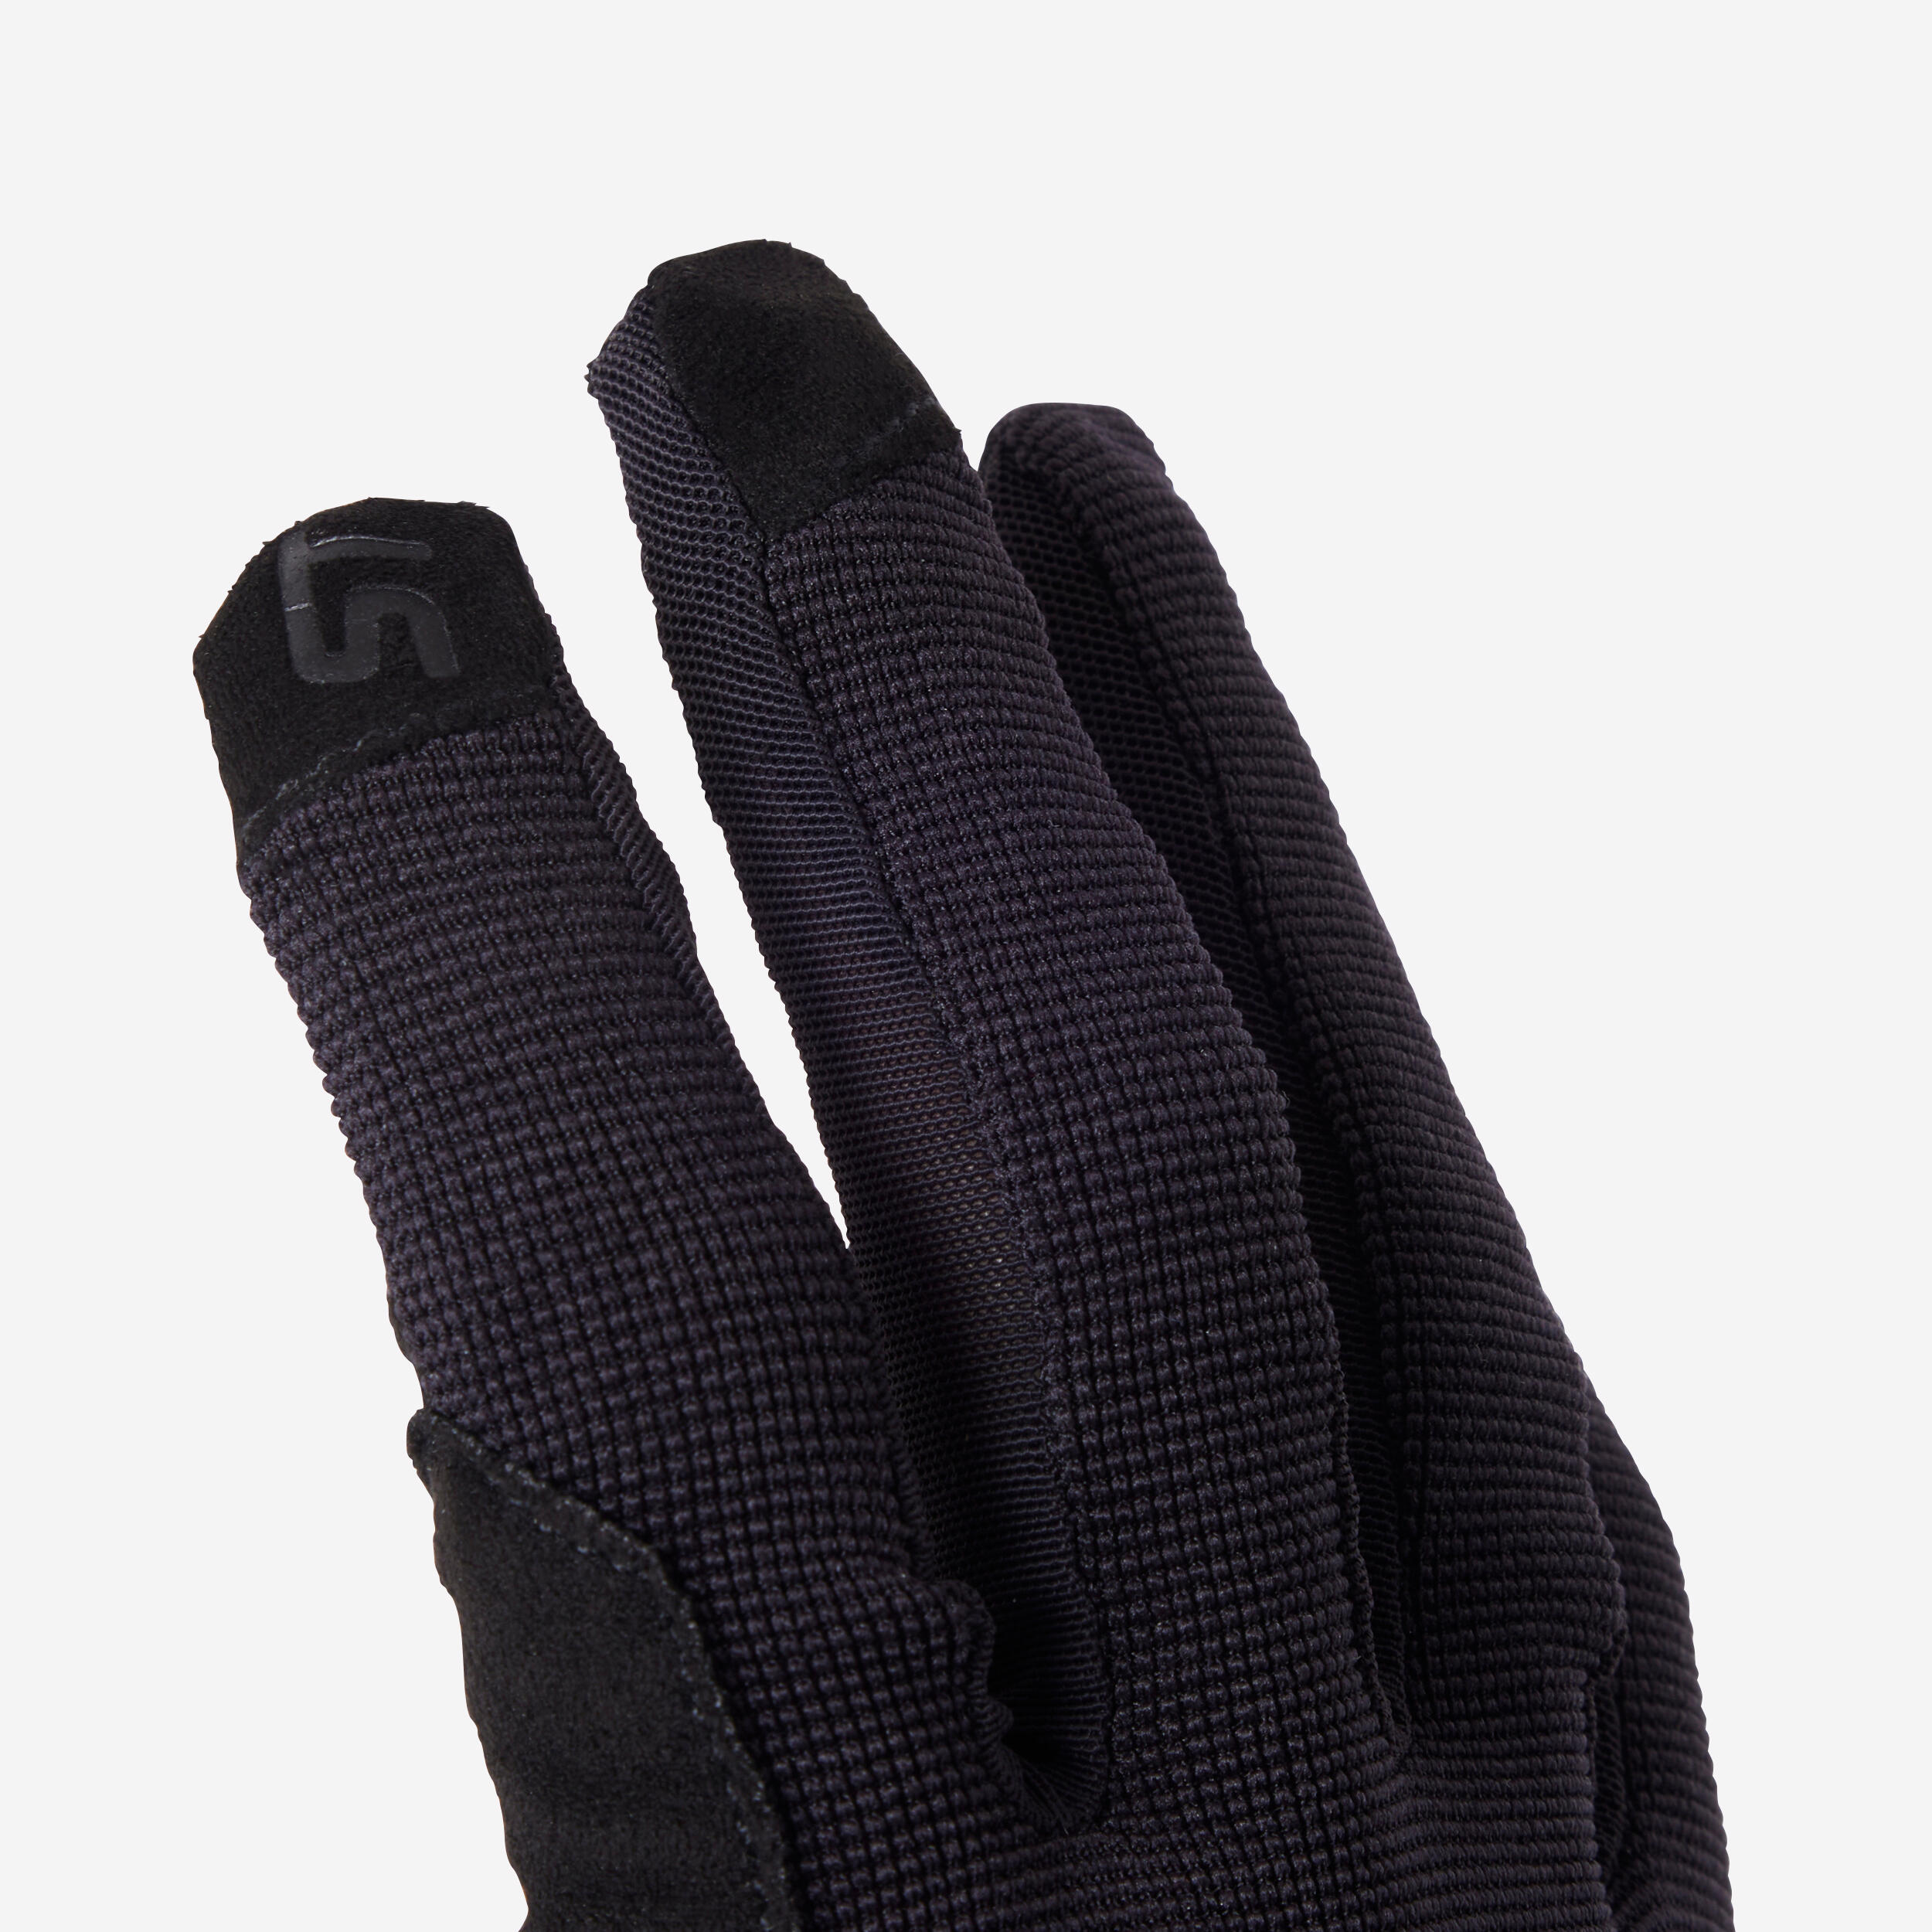 ST 100 Mountain Bike Gloves - Black 7/9